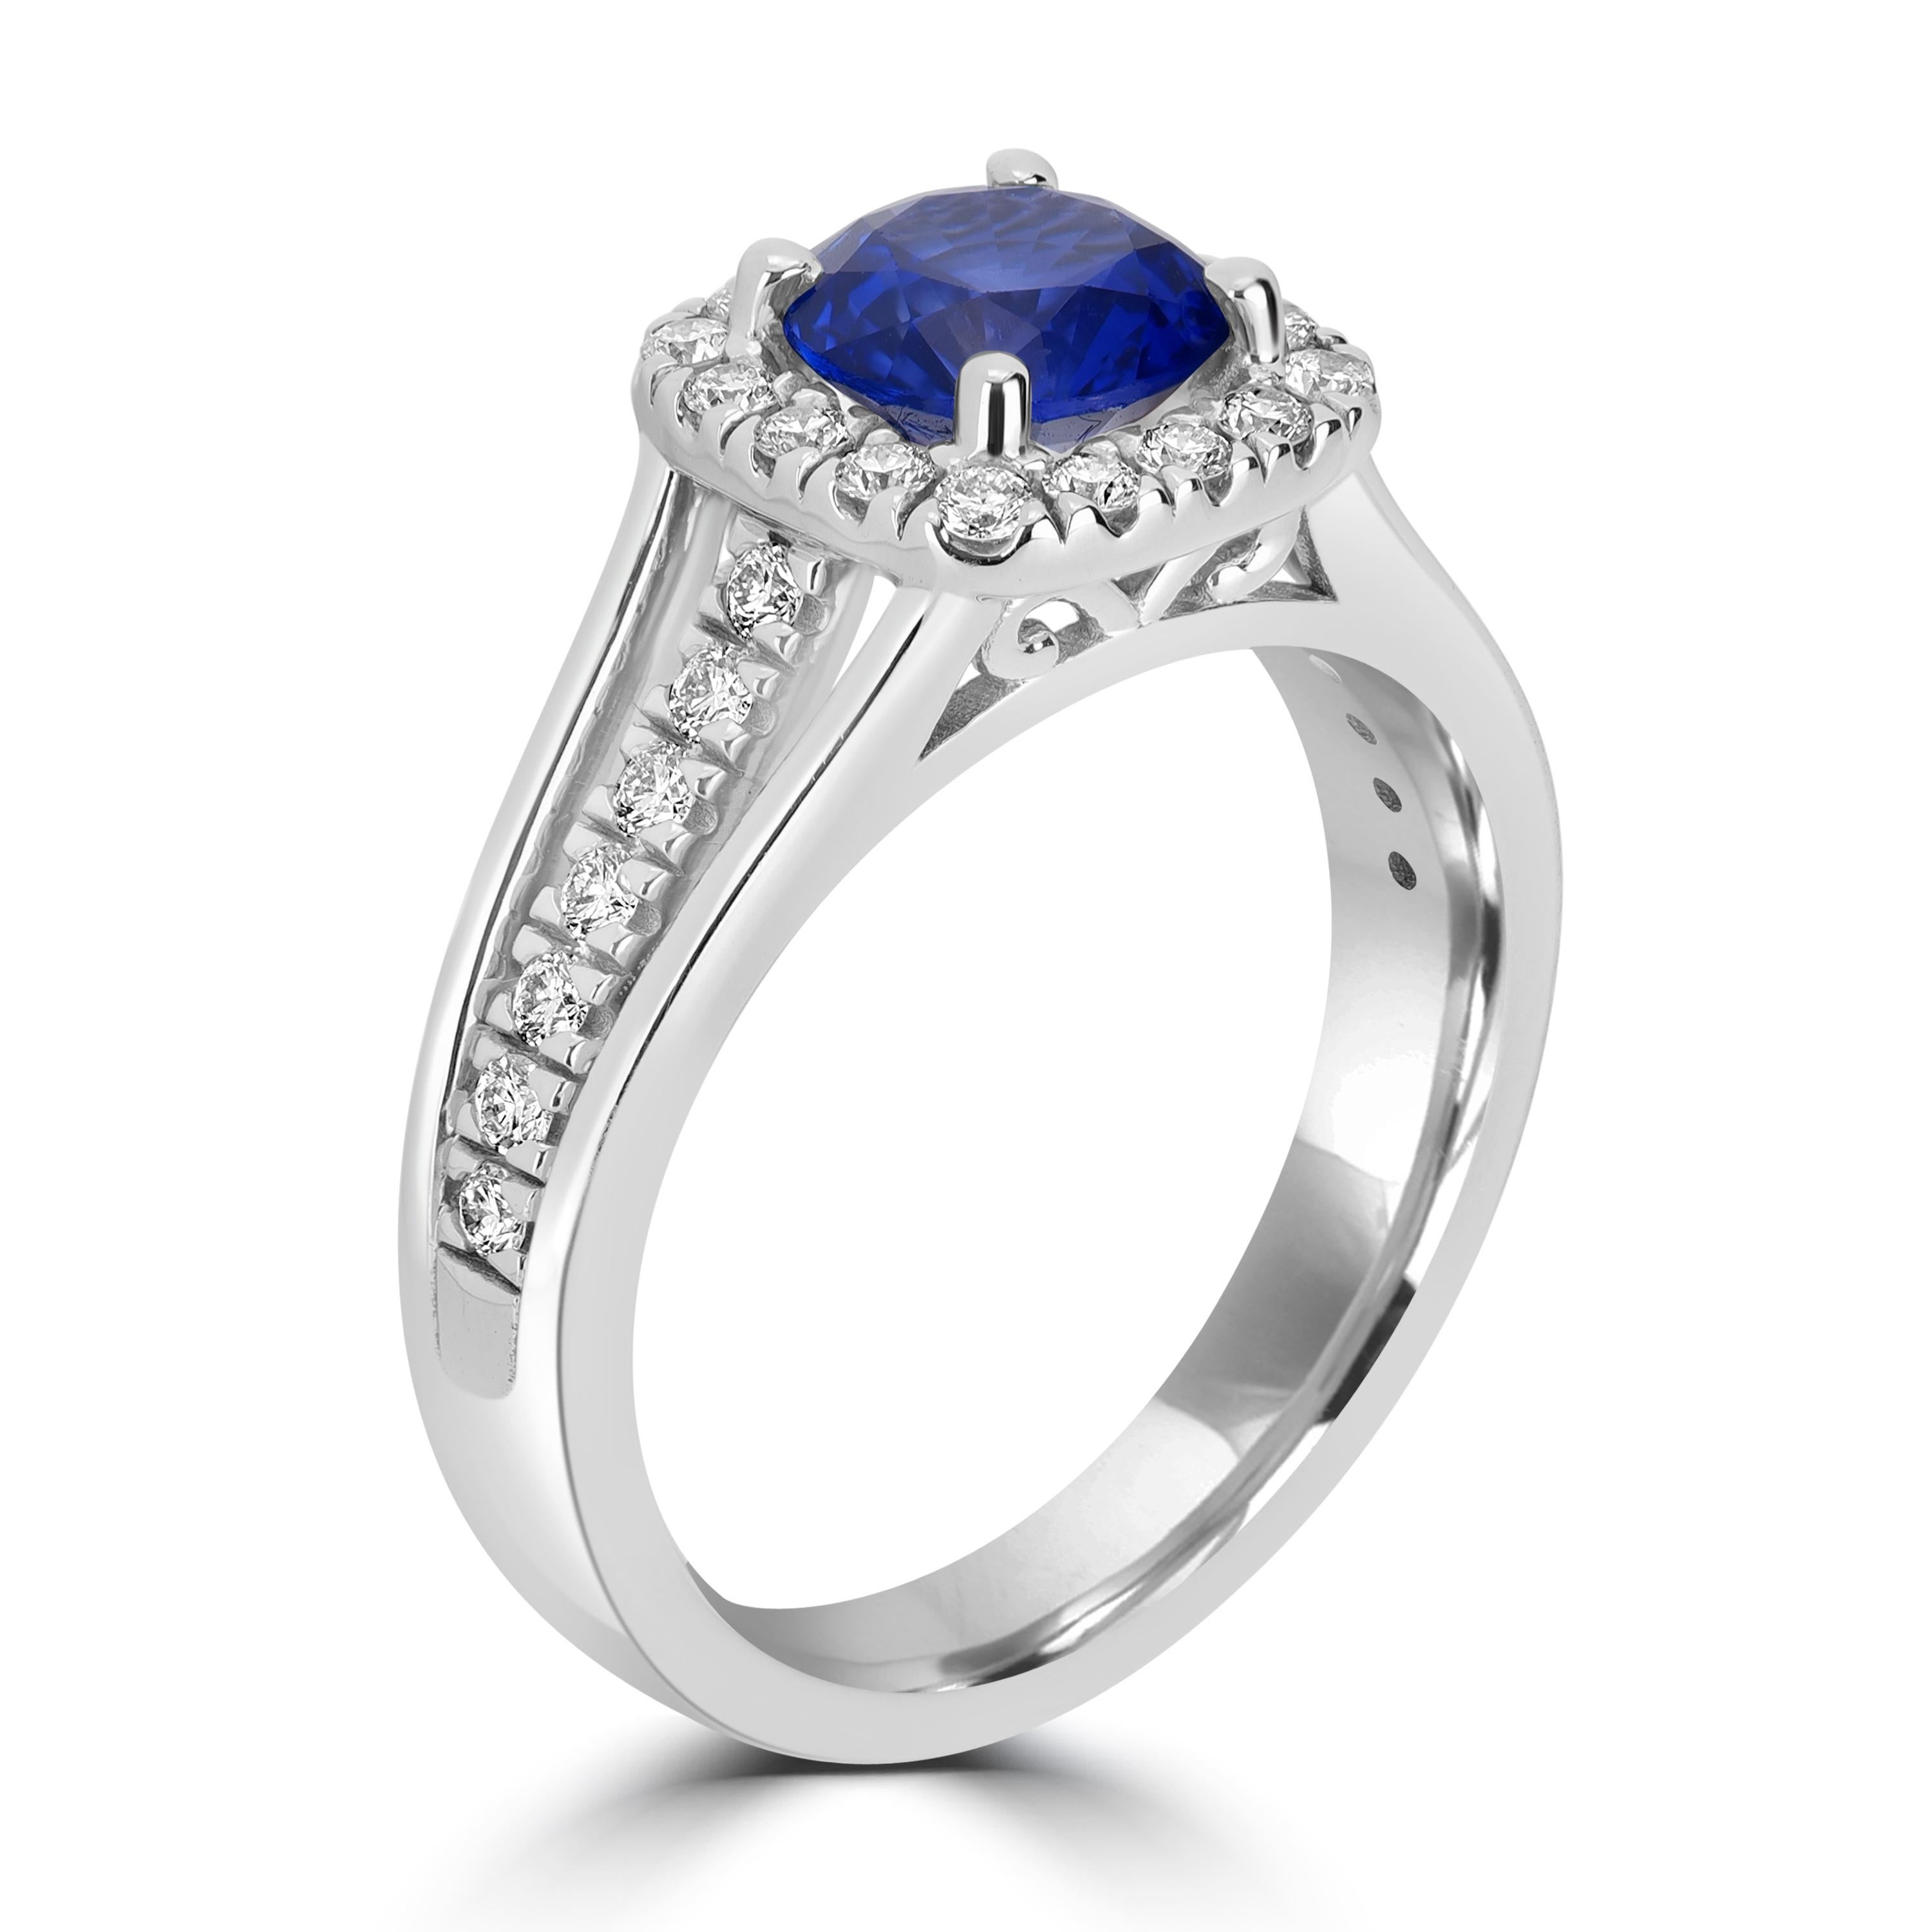 Dieser besondere Ring ist für einen besonderen Menschen in Ihrem Leben bestimmt. Dieser Ring enthält einen 6,5 mm großen runden Saphir als Mittelstein mit Diamanten rundherum, so dass es ein Halo-Ring mit den Diamanten auf dem Band, die ihm ein